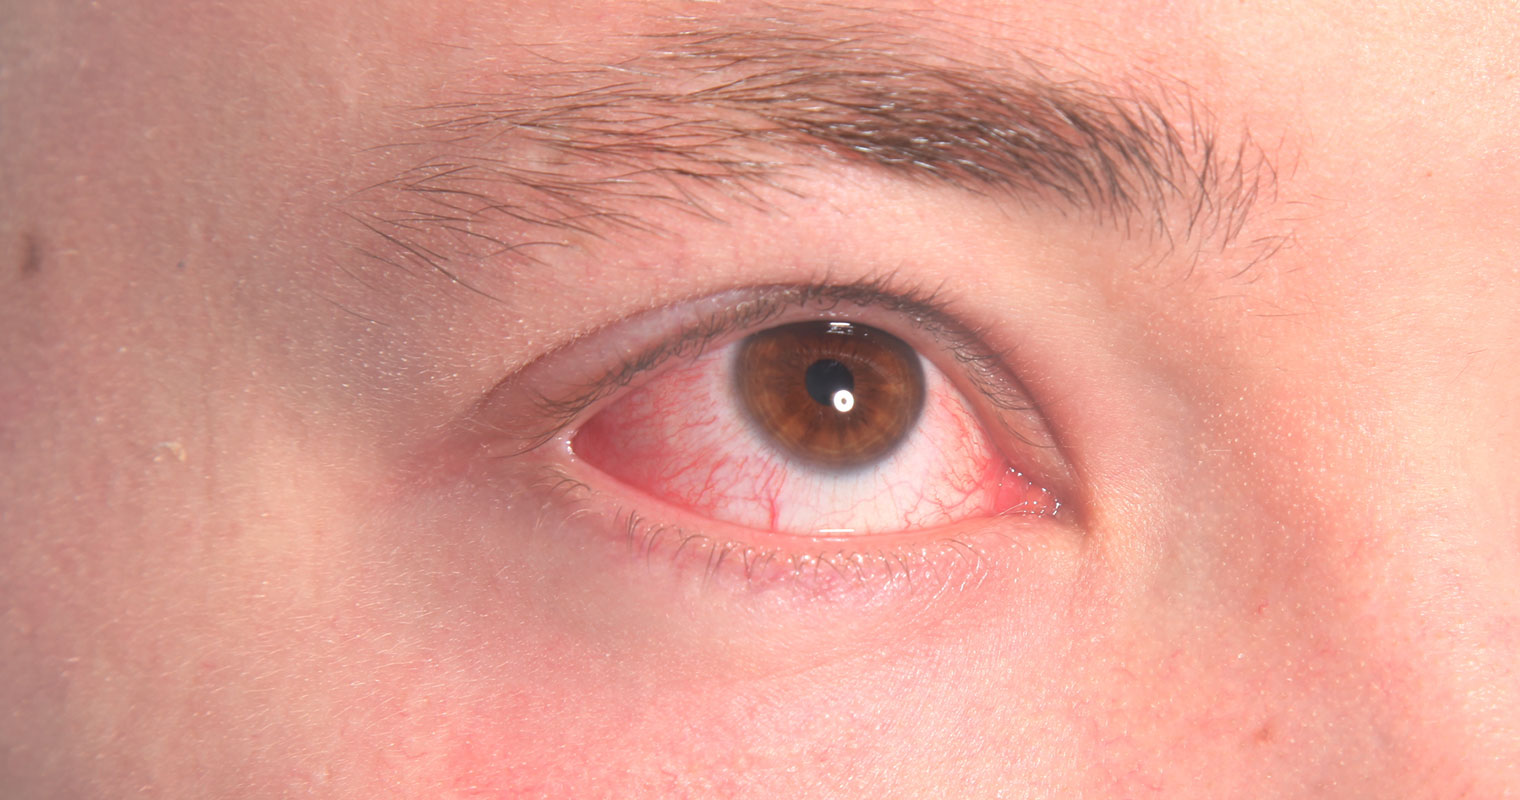 dry eyes or eye irritation caused by rosacea